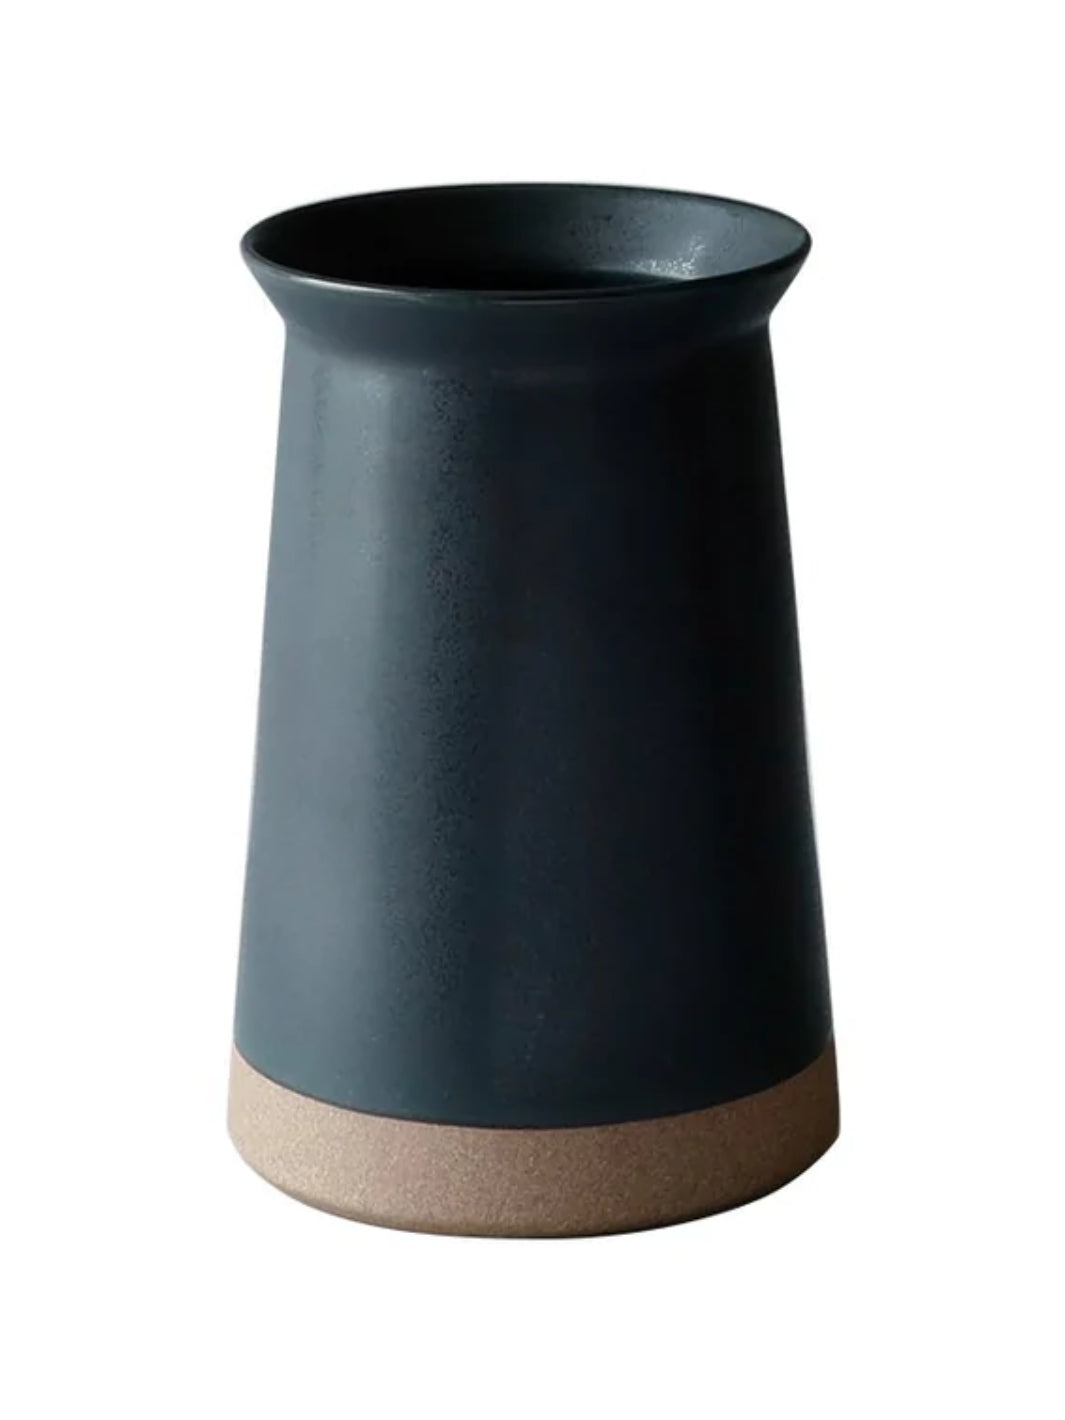 KINTO Ceramic Lab Utensil Holder (75mm/3in)